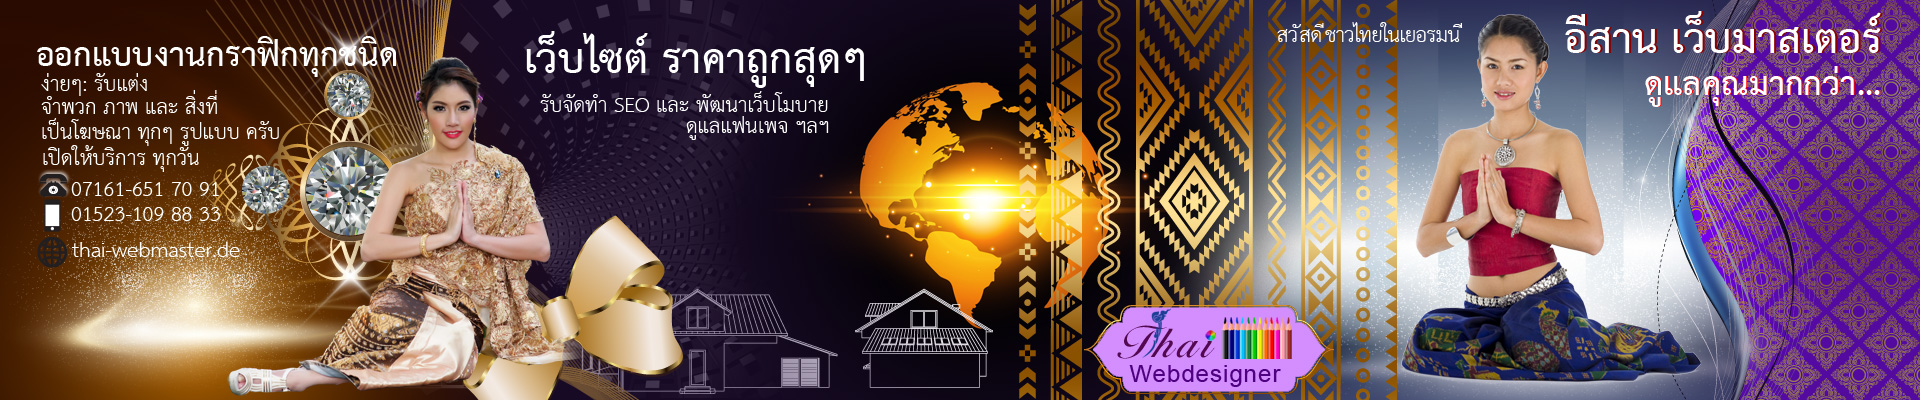 Thai-Webmaster für Thai-Massage, Restaurant, Imbiss Webseite für Thai in Deutschland